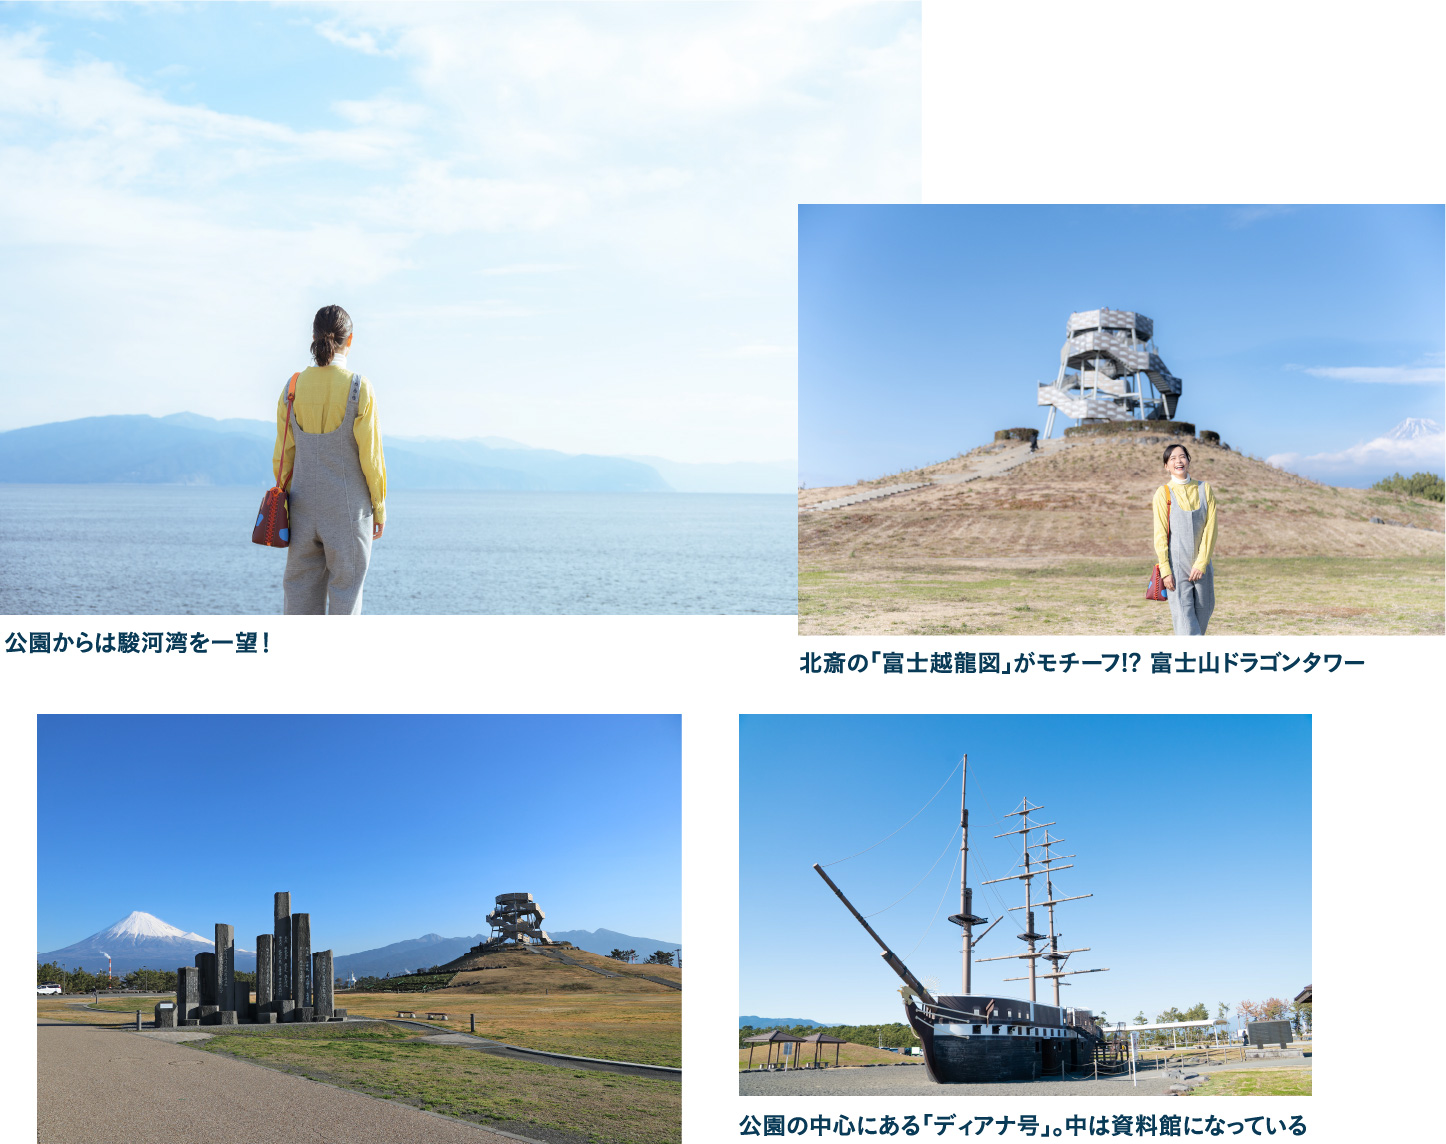 海抜0メートルから富士山を望む ふじのくに田子の浦みなと公園で駿河湾沿いを散策